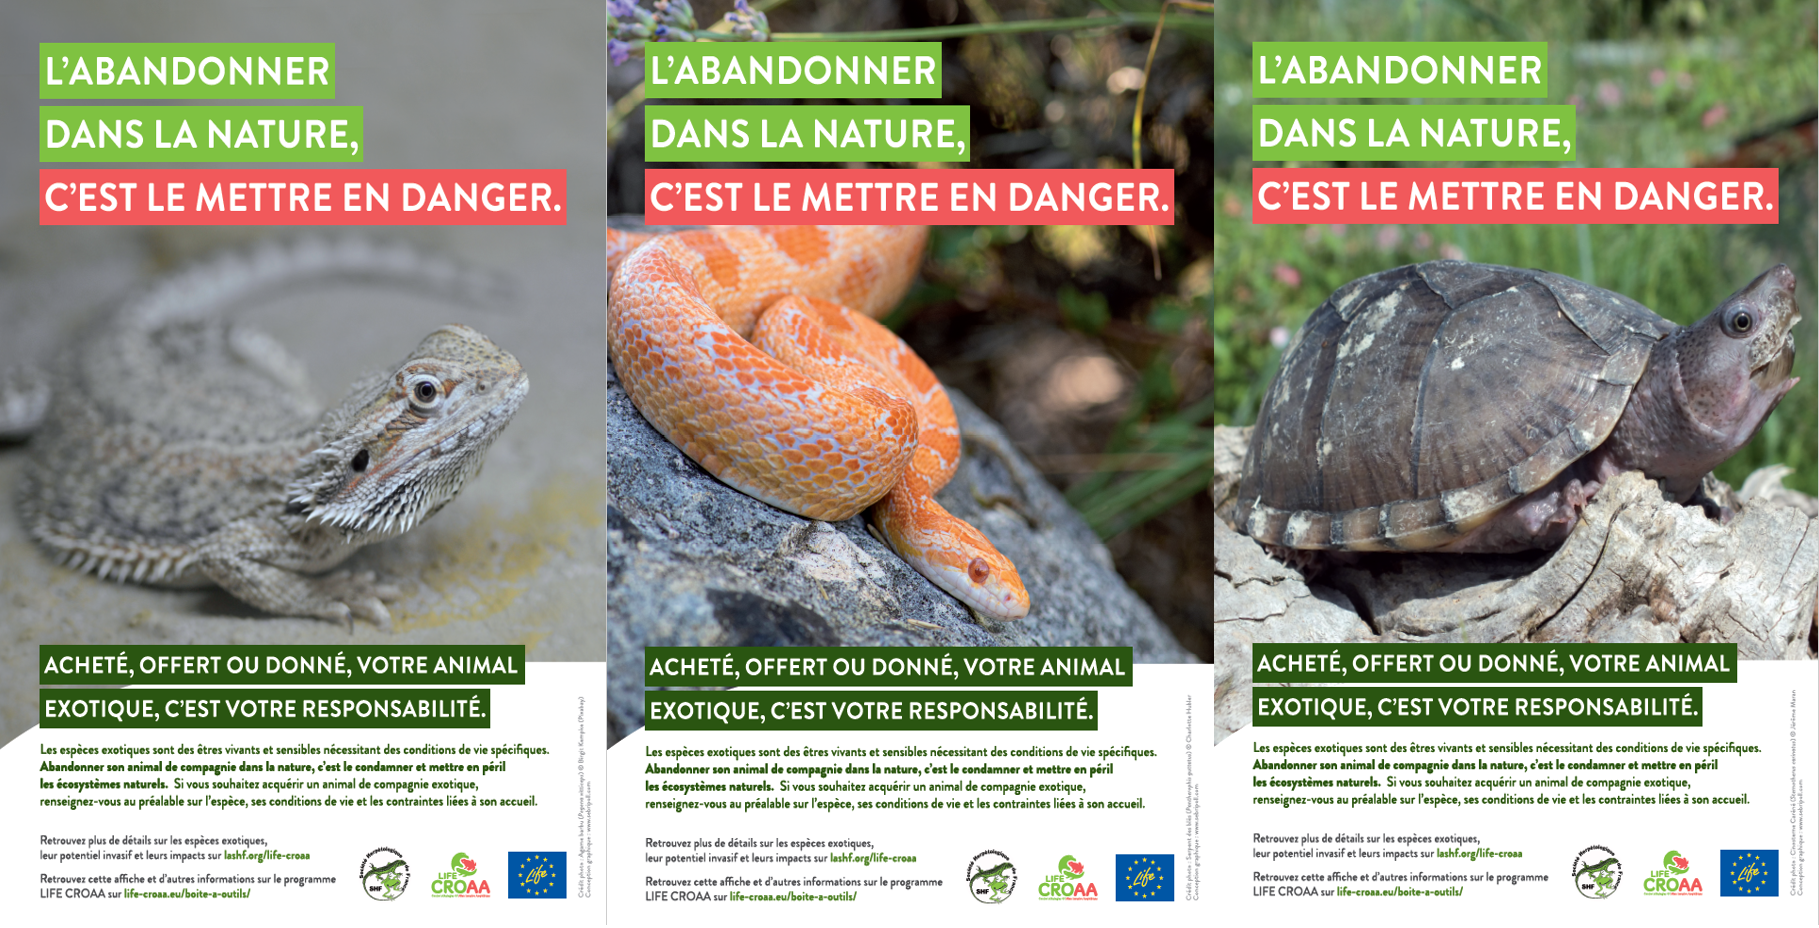 Prévenir le relâché d’espèces exotiques dans la nature : les outils de sensibilisation de la Société herpétologique de France